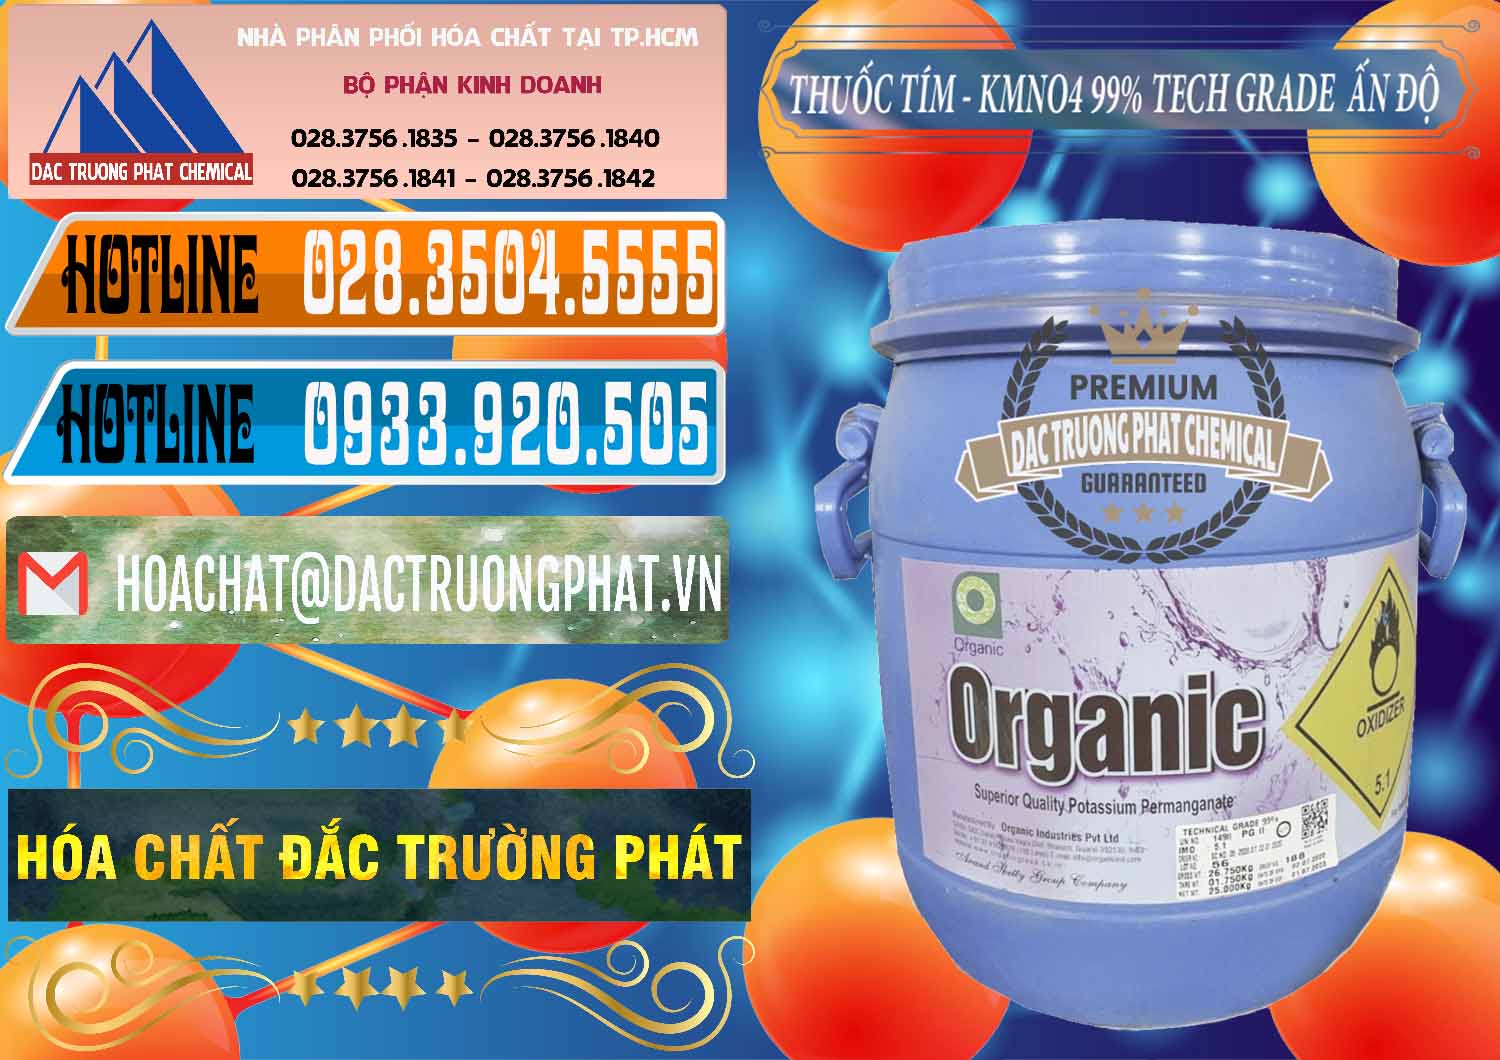 Cty chuyên bán _ cung cấp Thuốc Tím - KMNO4 99% Organic Group Ấn Độ India - 0250 - Cung cấp - phân phối hóa chất tại TP.HCM - stmp.net